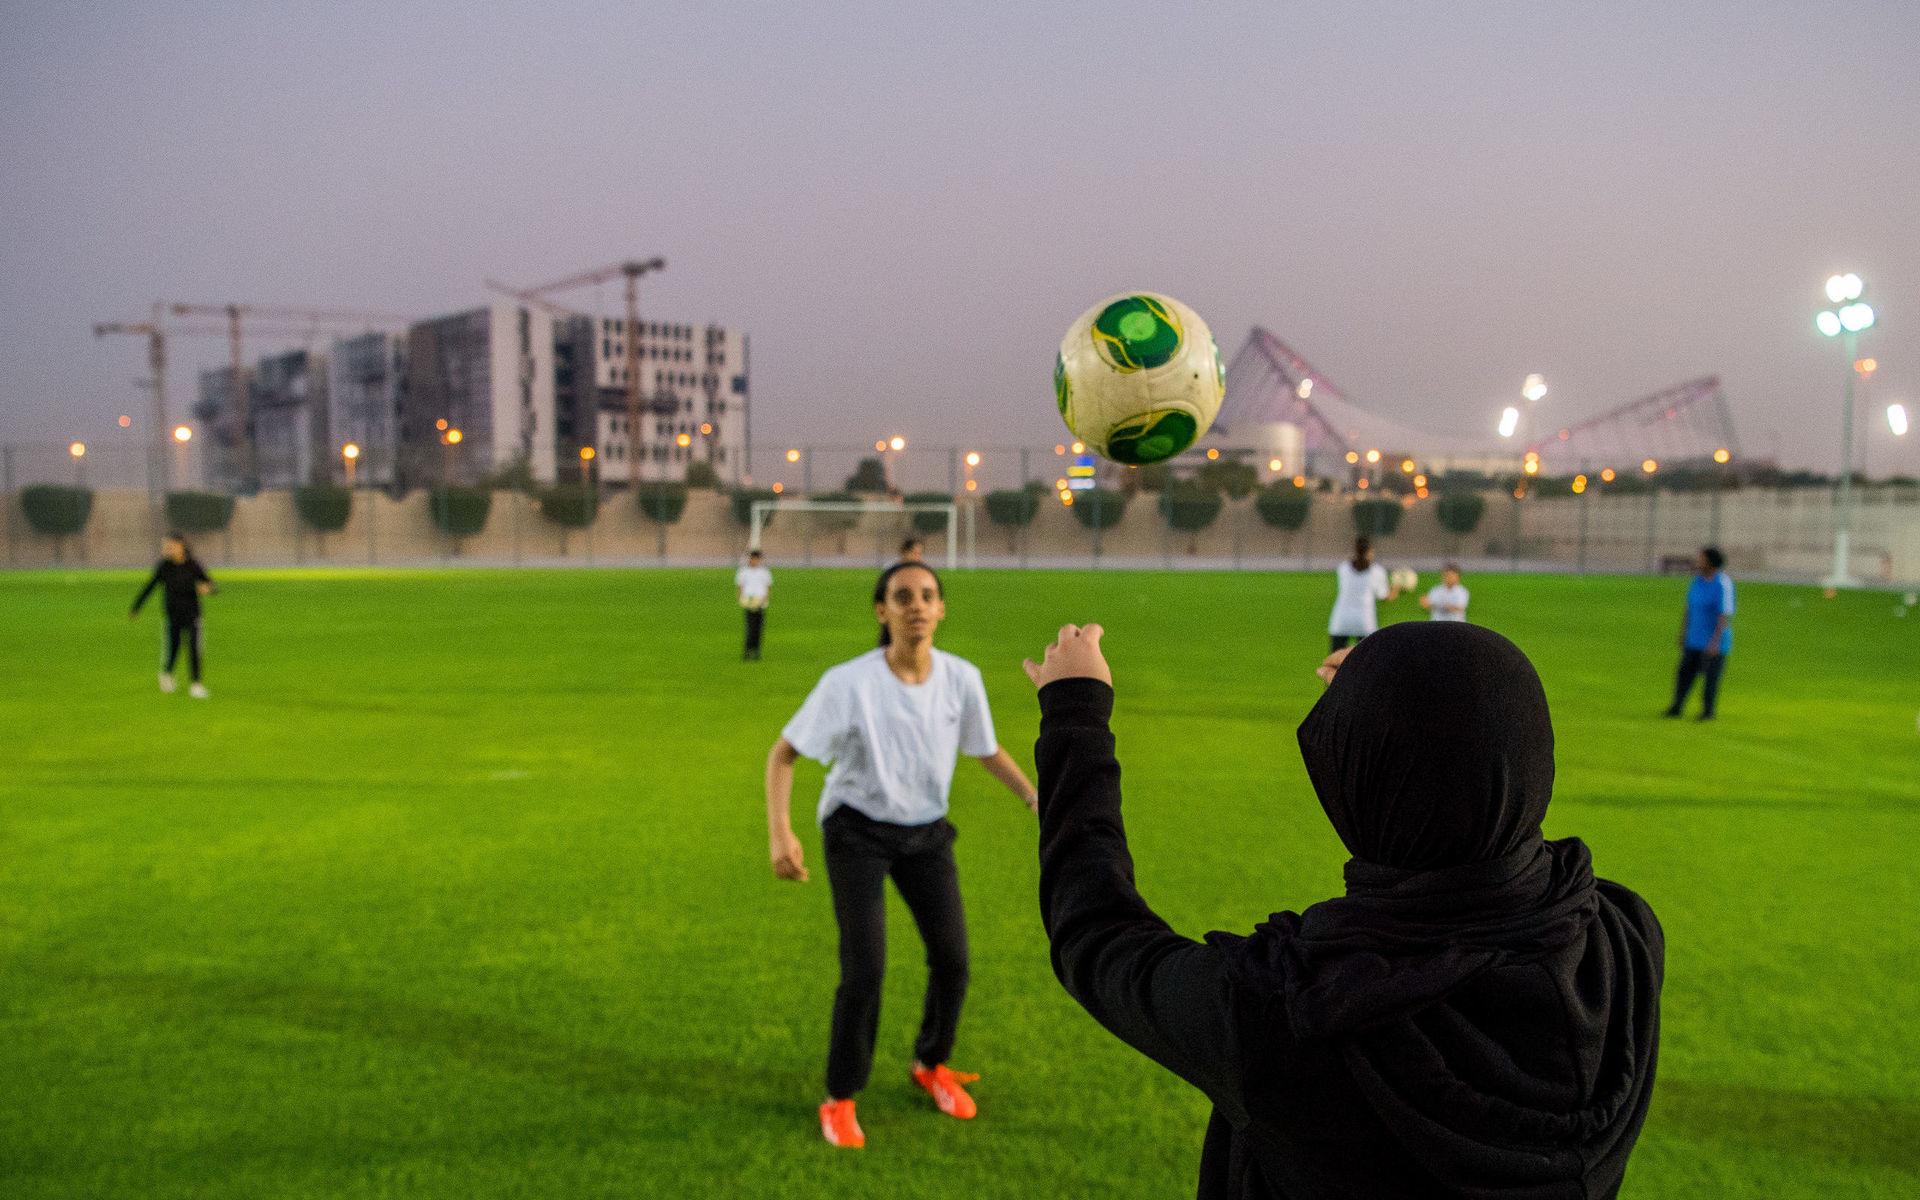 Planen Qatars flicklandslag spelar på ligger inmurad på Women`s Sport Committees mark. Till lokalerna bussas klasser från flickskolor för idrottslektioner. 